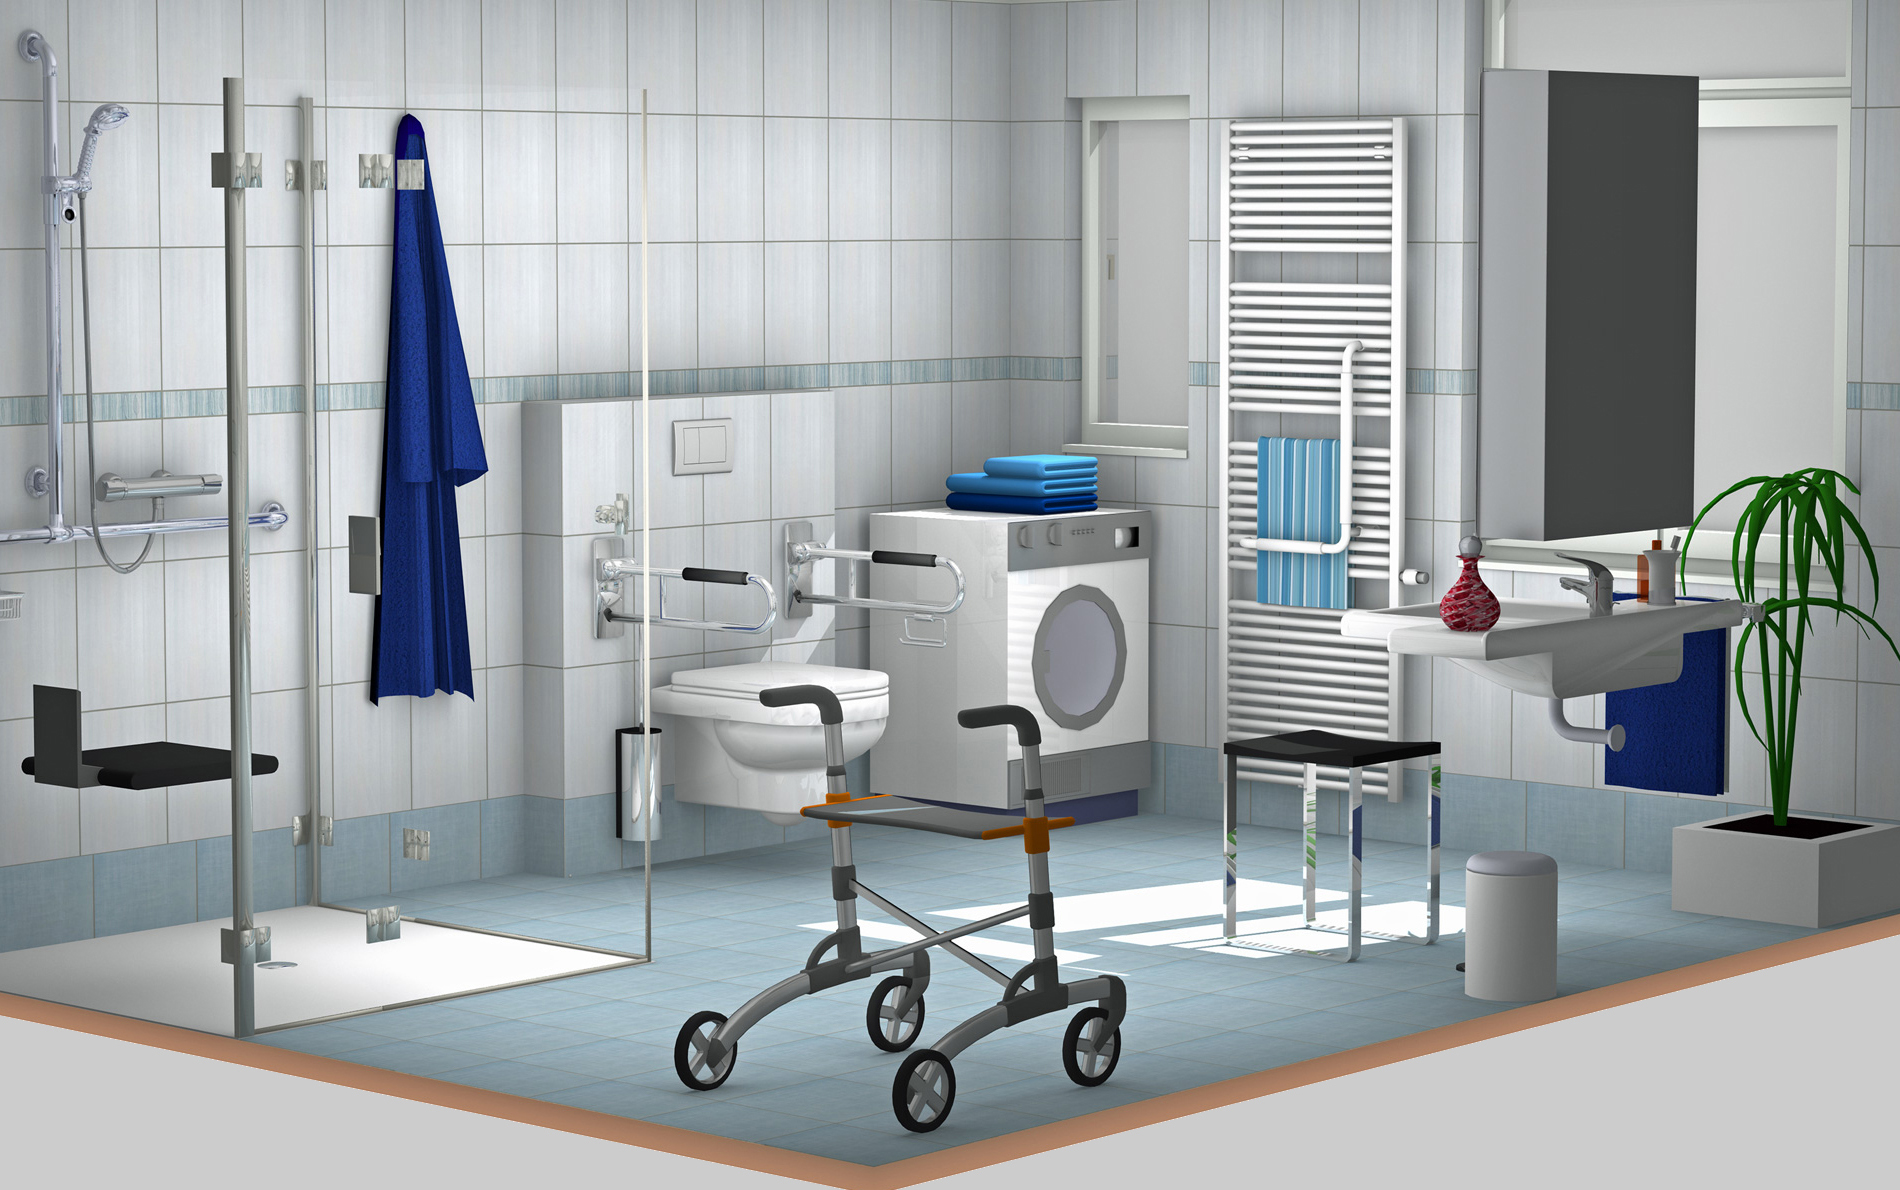 Das 3D-Bild zeigt ein barrierefreies Bad mit bodenebener Dusche, Duschklappsitz, Waschtisch mit Beinfreiheit und Hocker, einem WC mit Stützklappgriffen sowie einem Rollator.